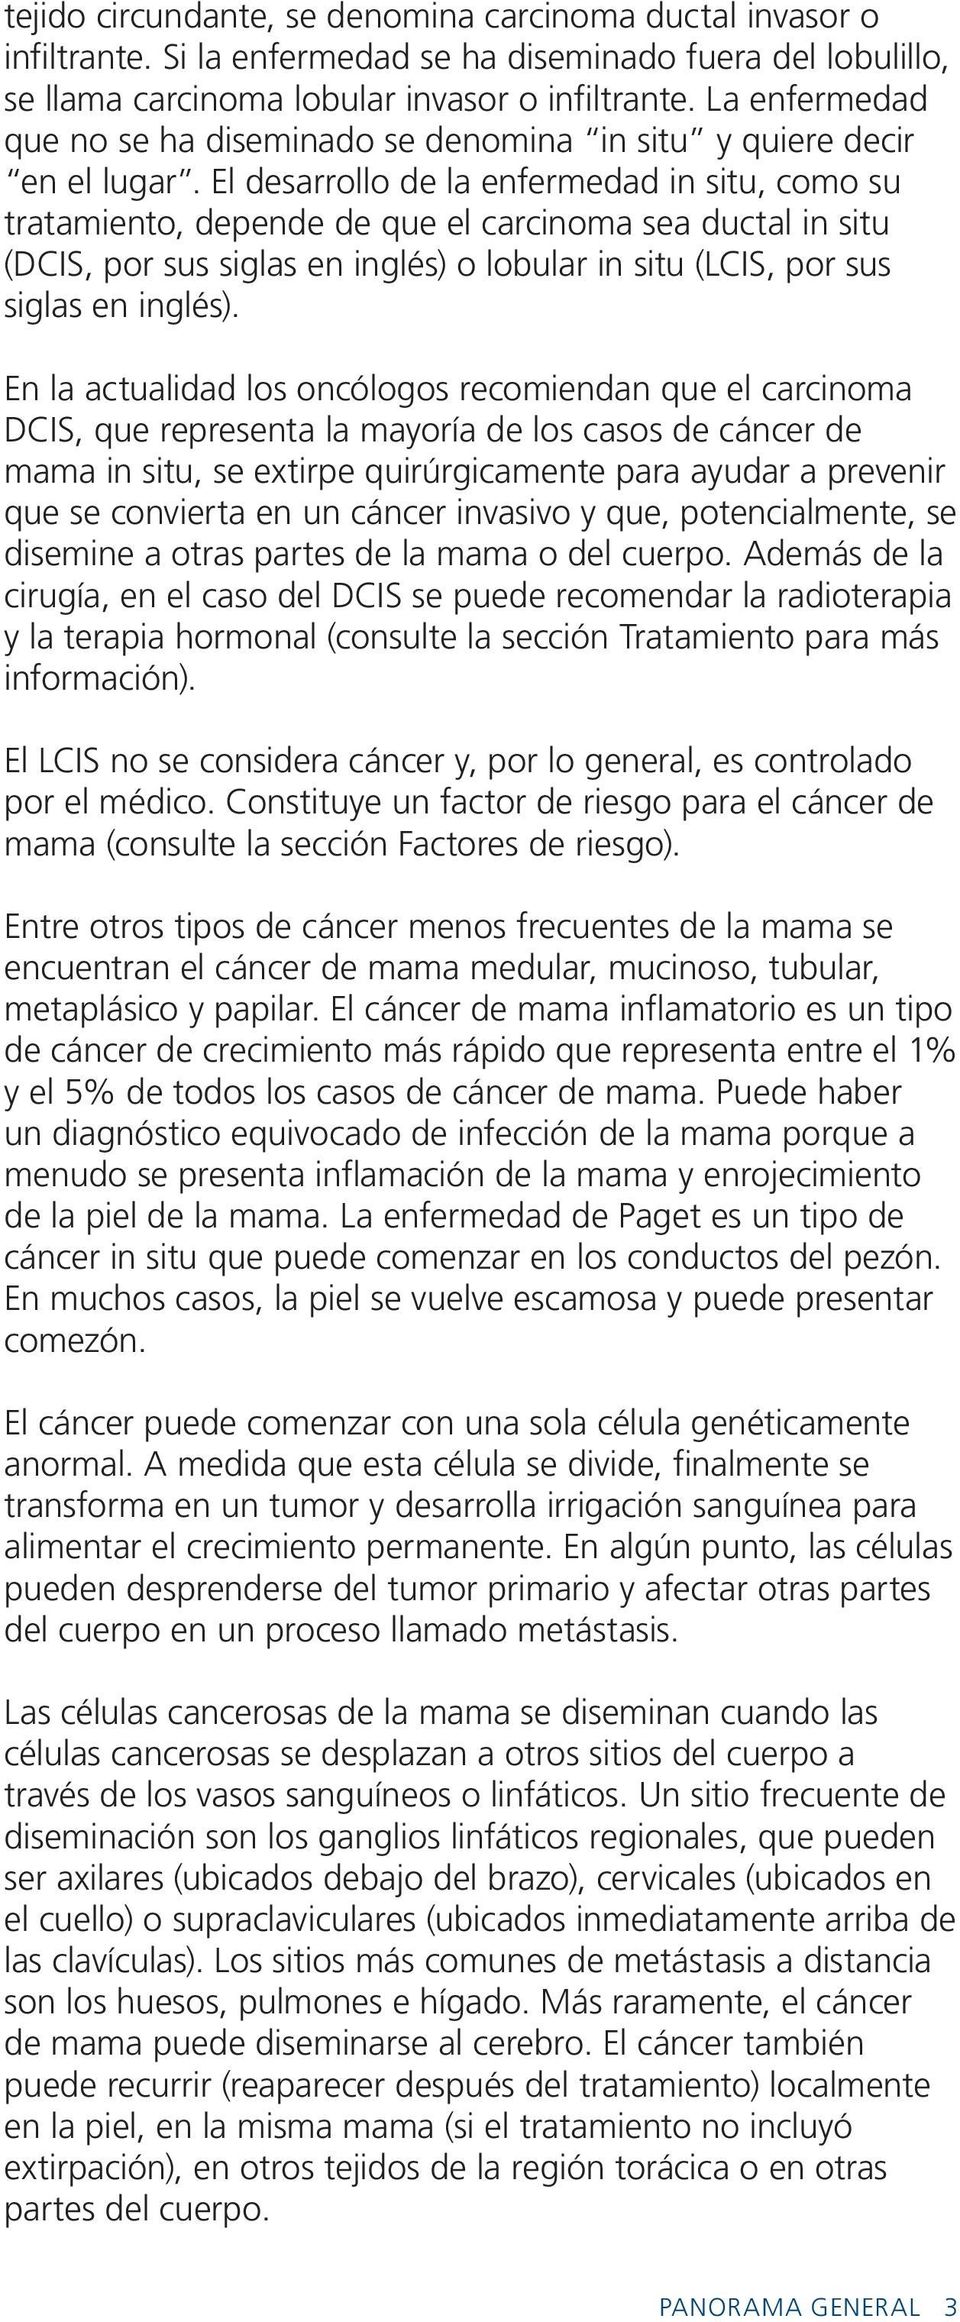 El desarrollo de la enfermedad in situ, como su tratamiento, depende de que el carcinoma sea ductal in situ (DCIS, por sus siglas en inglés) o lobular in situ (LCIS, por sus siglas en inglés).